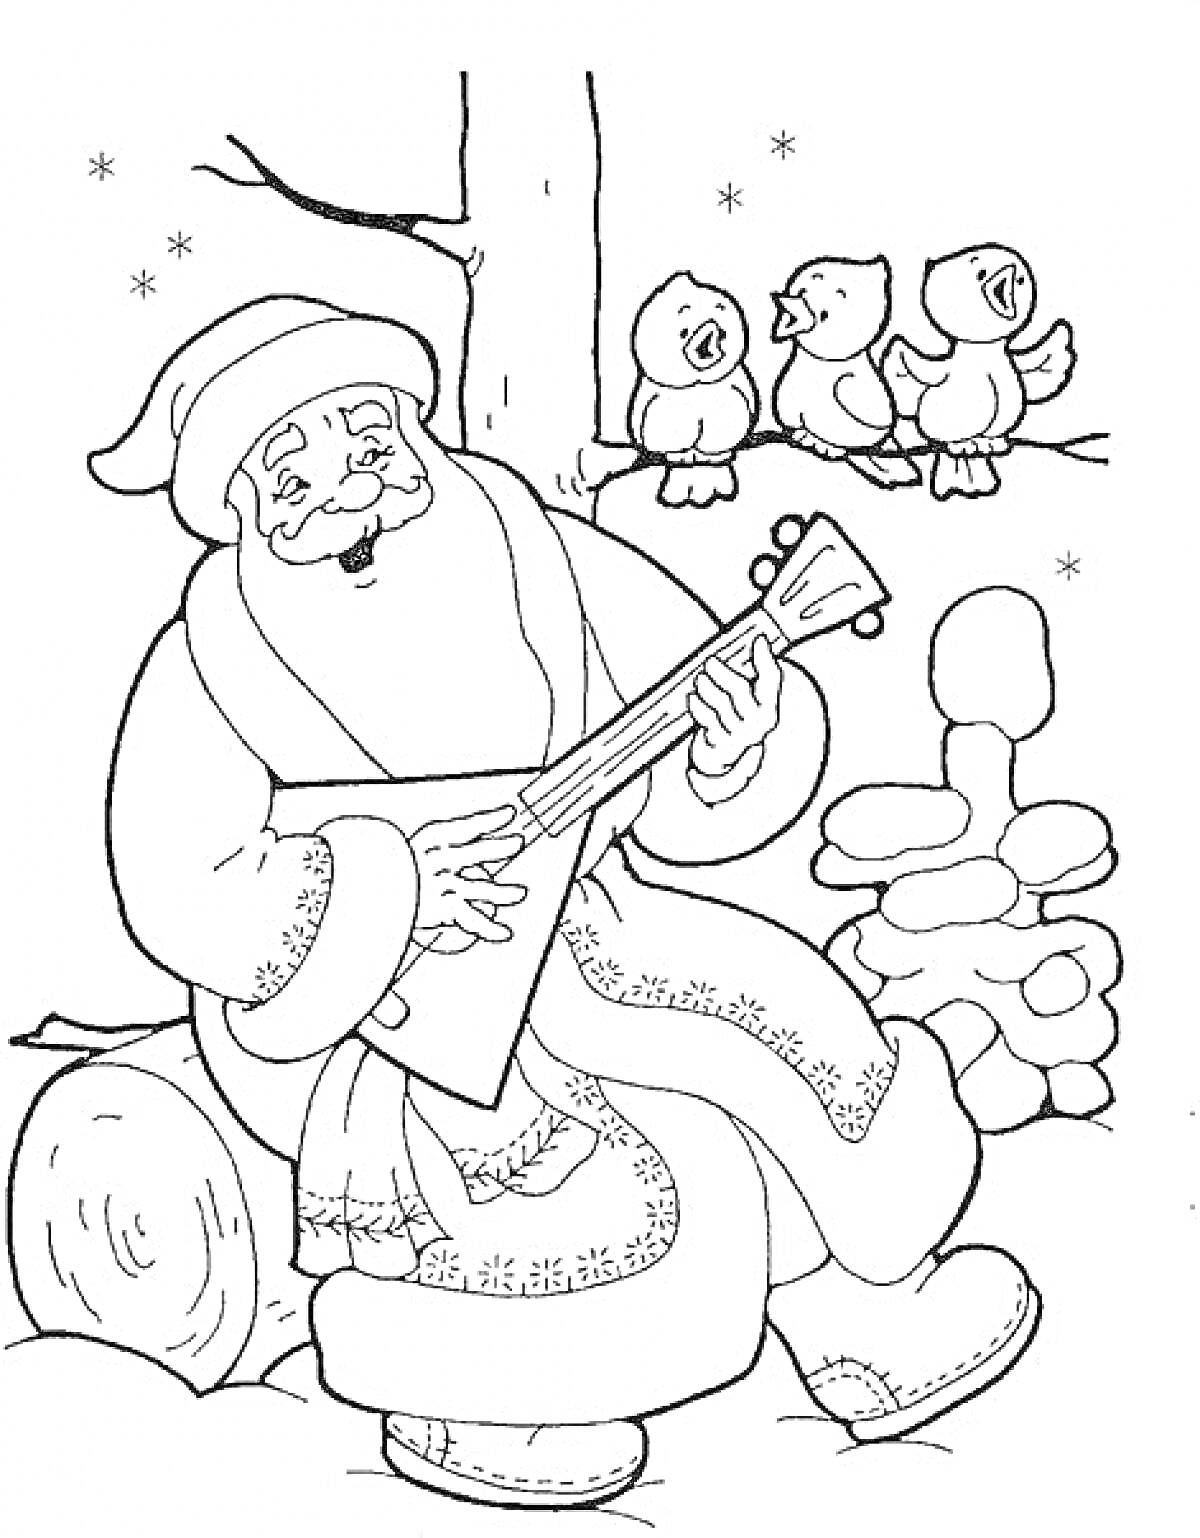 Раскраска Дед Мороз с музыкальным инструментом, деревом и тремя птичками